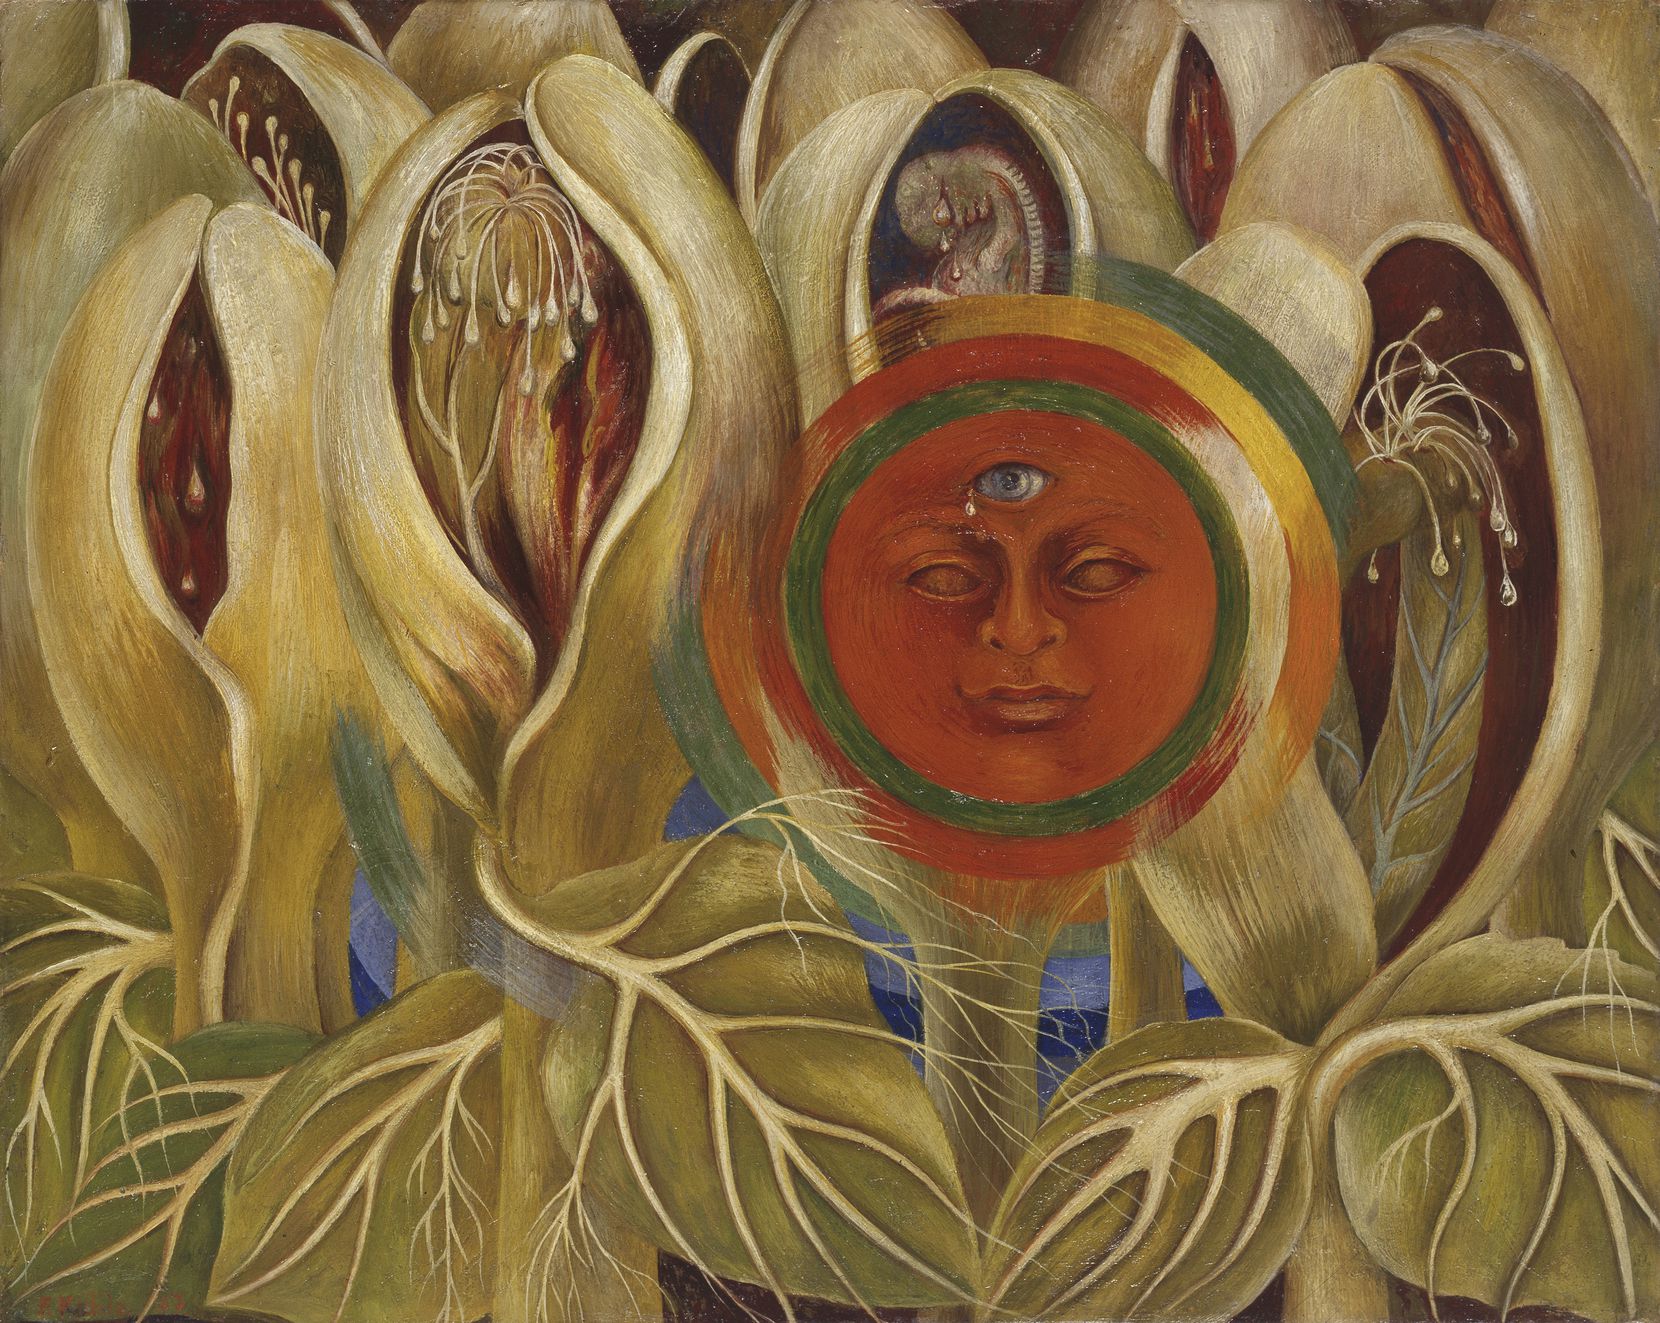 Frida Kahlo, "Sol y vida," 1947, óleo sobre masonita, colección privada, cortesía de Goller A Orville.  2021 Banco de México Diego Rivera Frida Kahlo Museums Trust, México, DF / Artists Rights Society (ARS), Nueva York